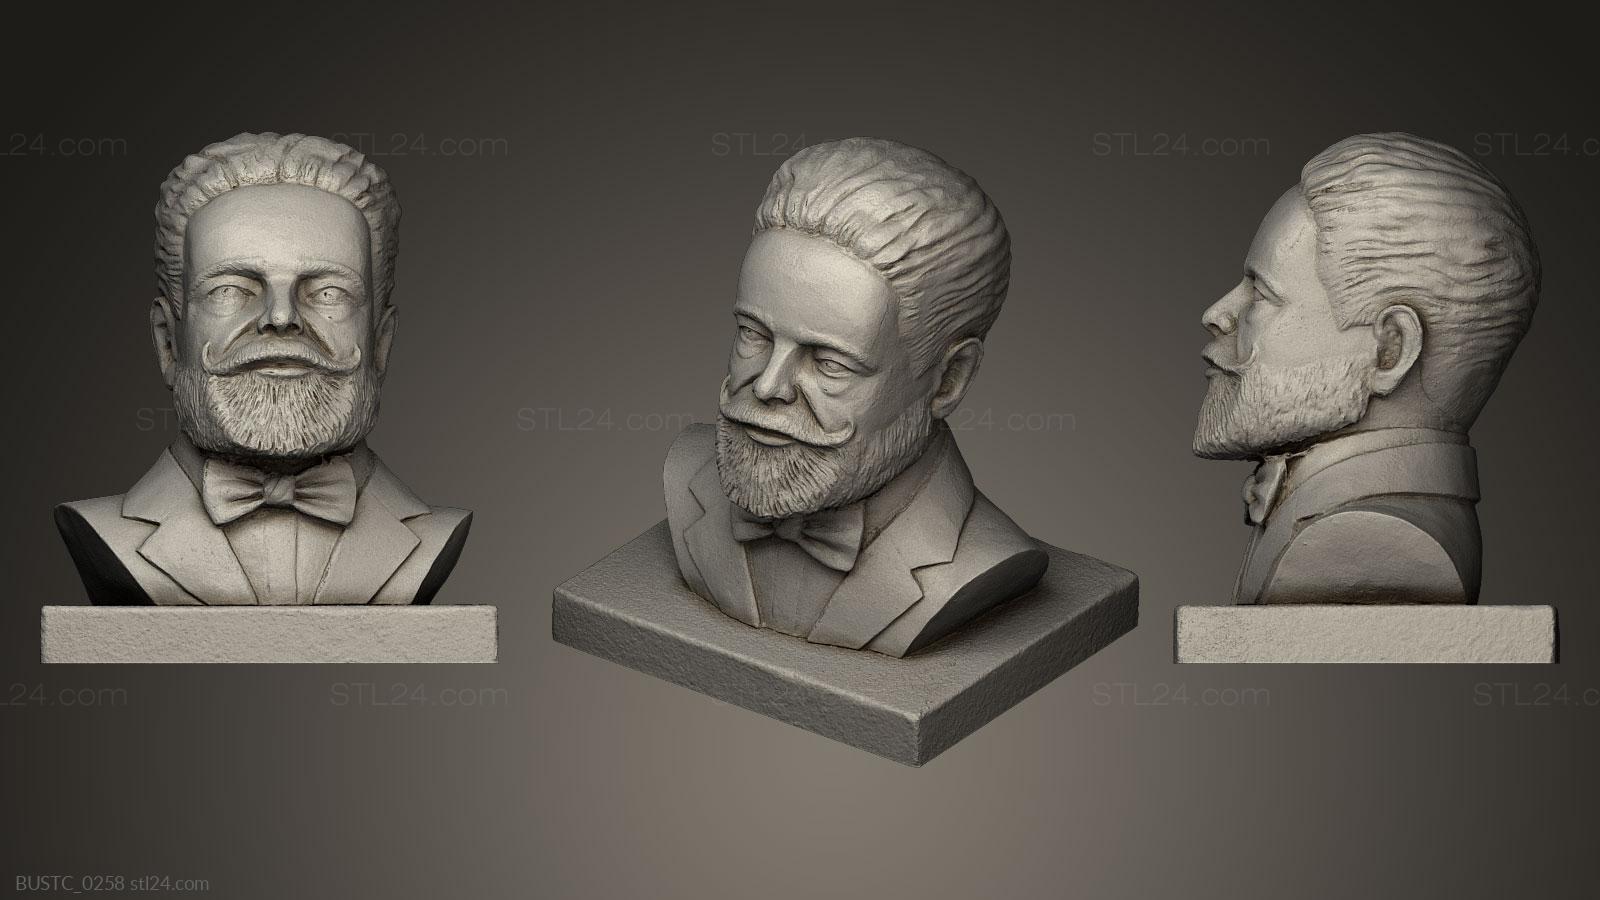 Бюсты и барельефы известных личностей (Исаак Альбниц, BUSTC_0258) 3D модель для ЧПУ станка